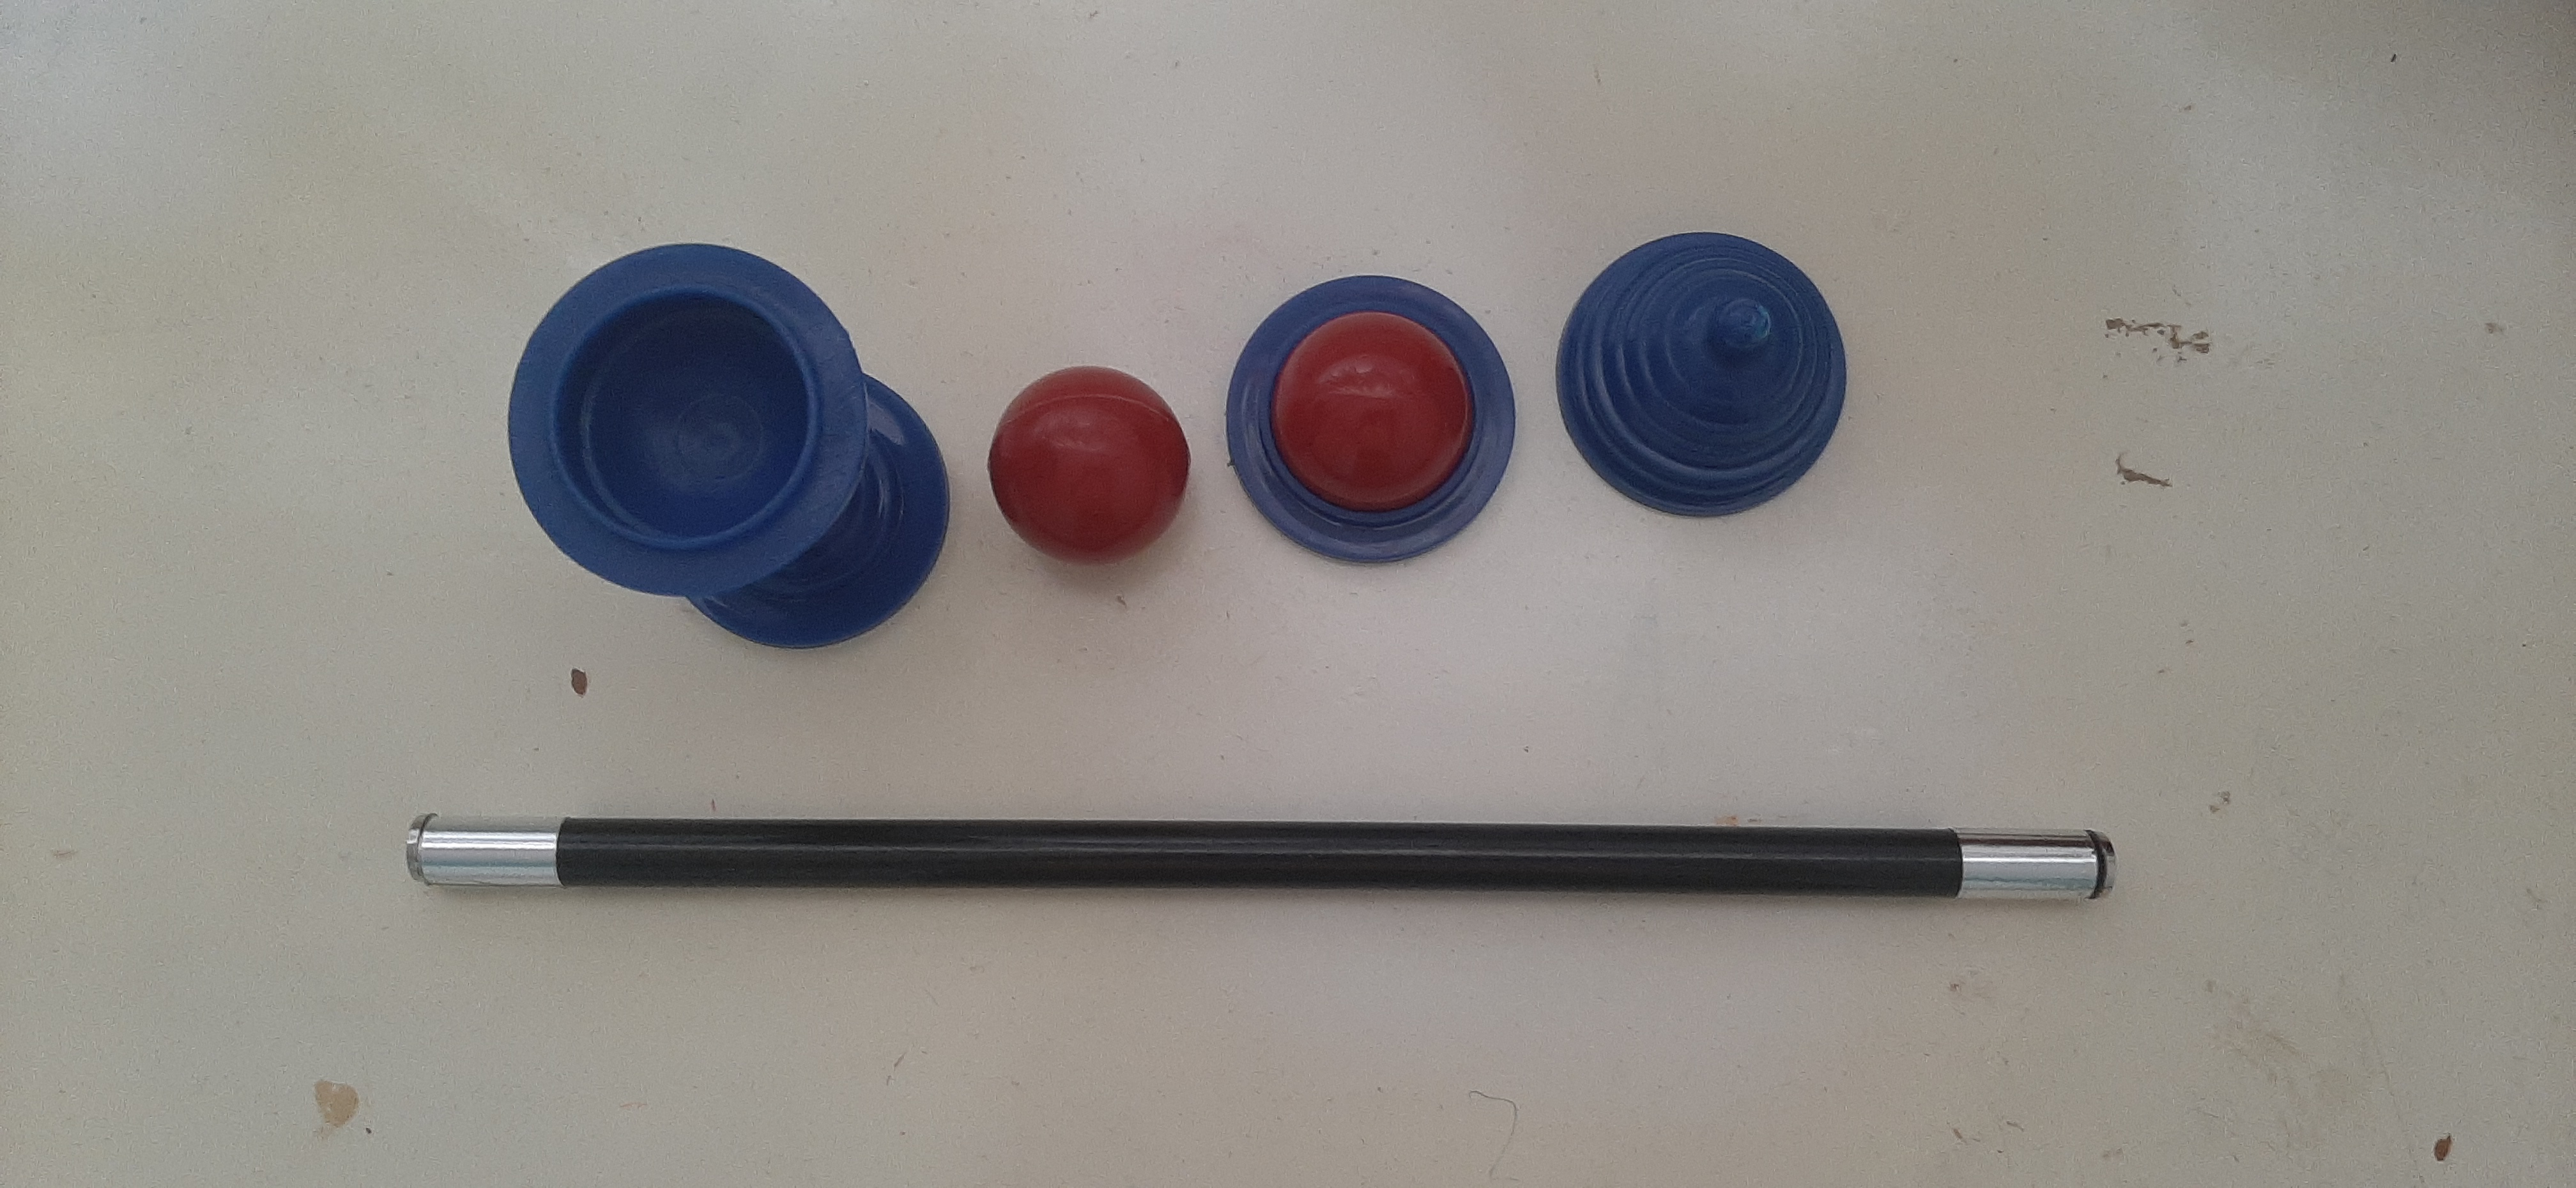 ابزار شعبده بازی مدل توپ و قندان و عصای جادویی کد AJ TP 02 مجموعه 2 عددی